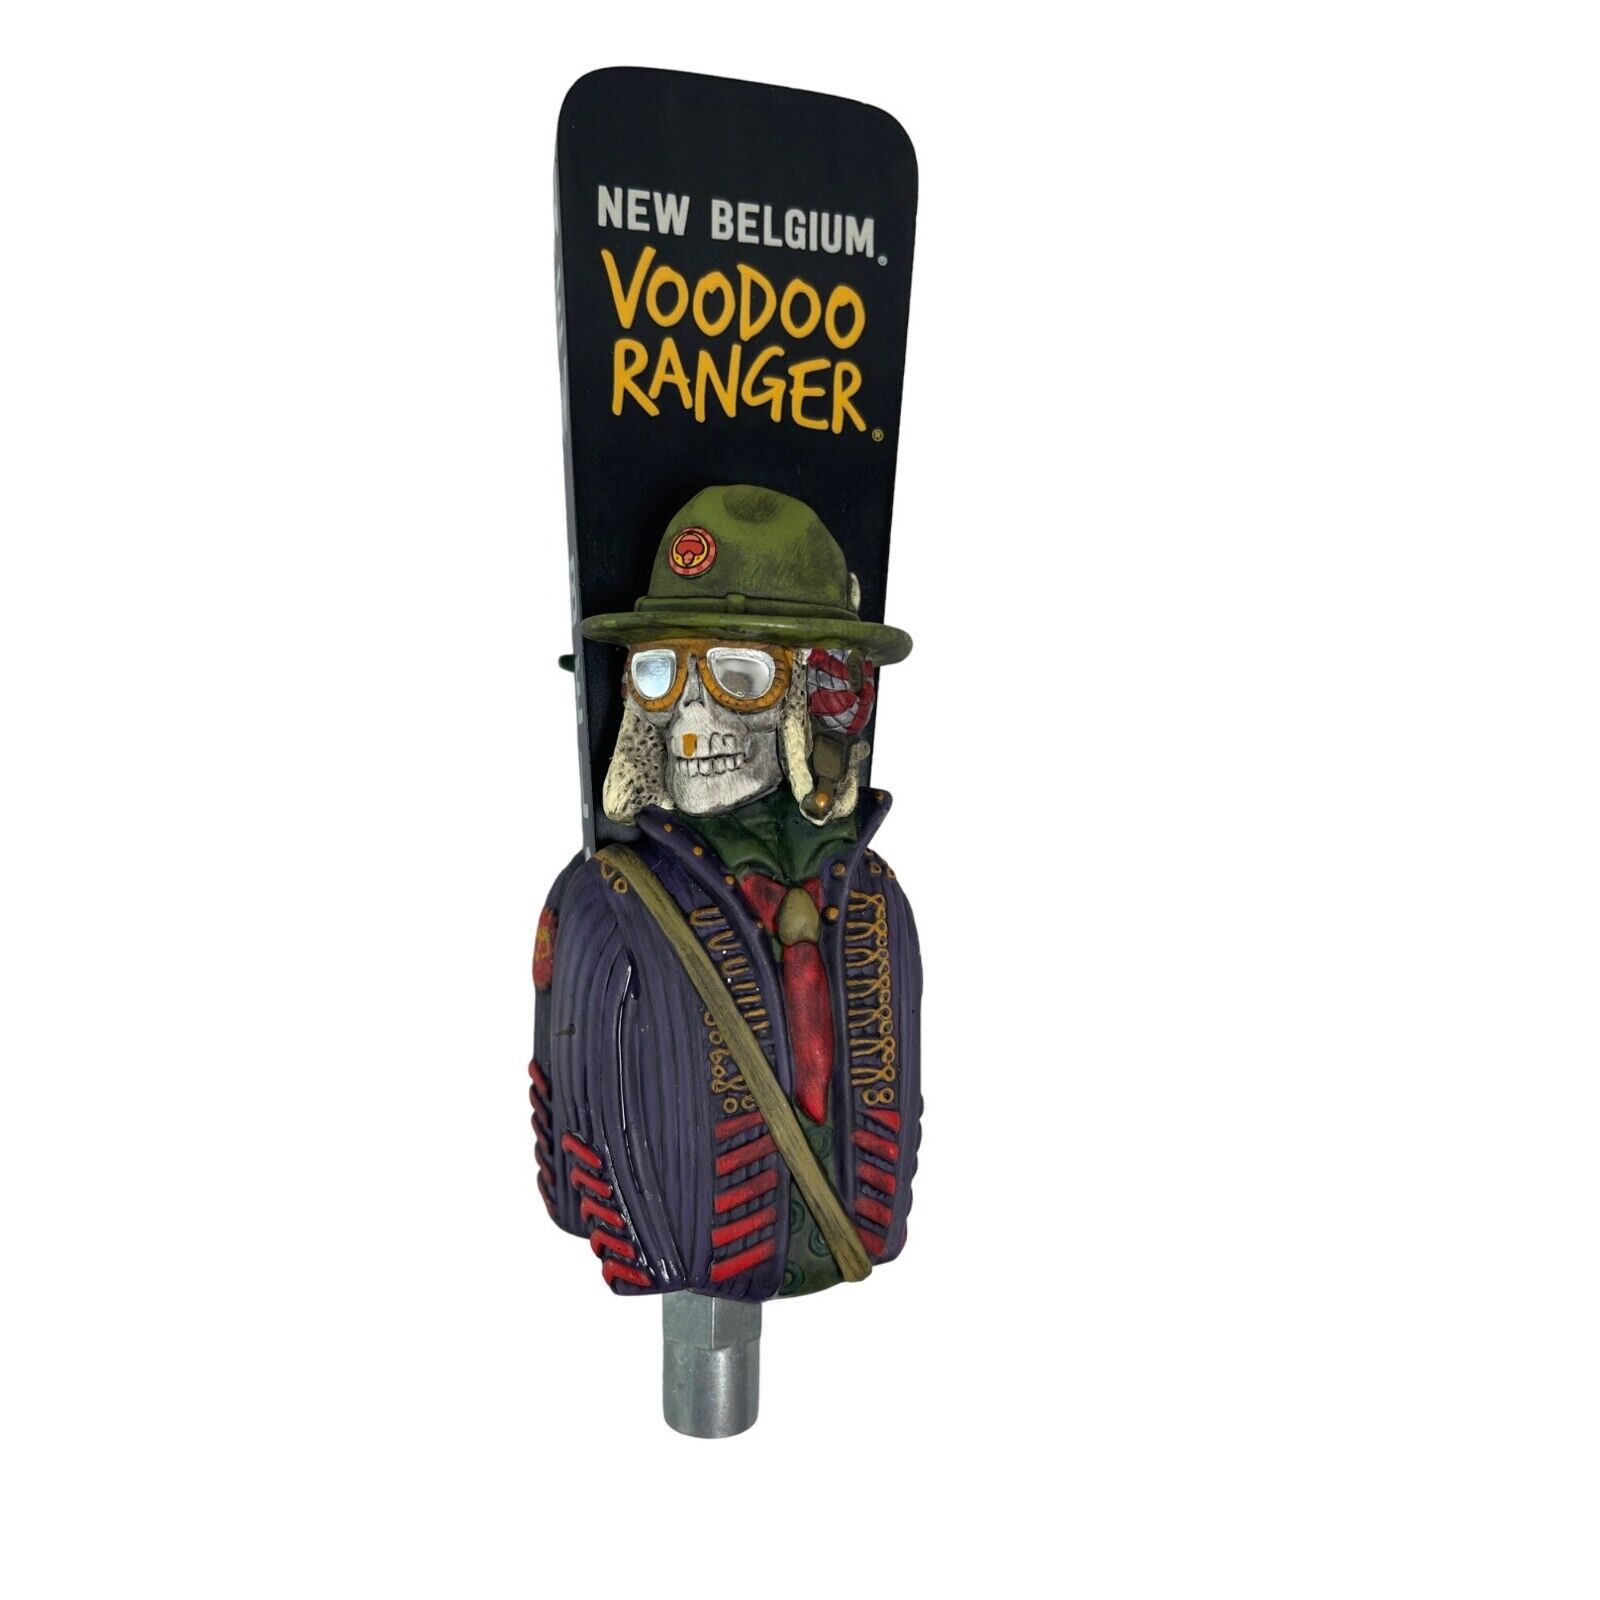 New Belgium Voodoo Ranger Pale Ale Draft Beer Keg Bar Tap Handle Skeleton 7.5 ”